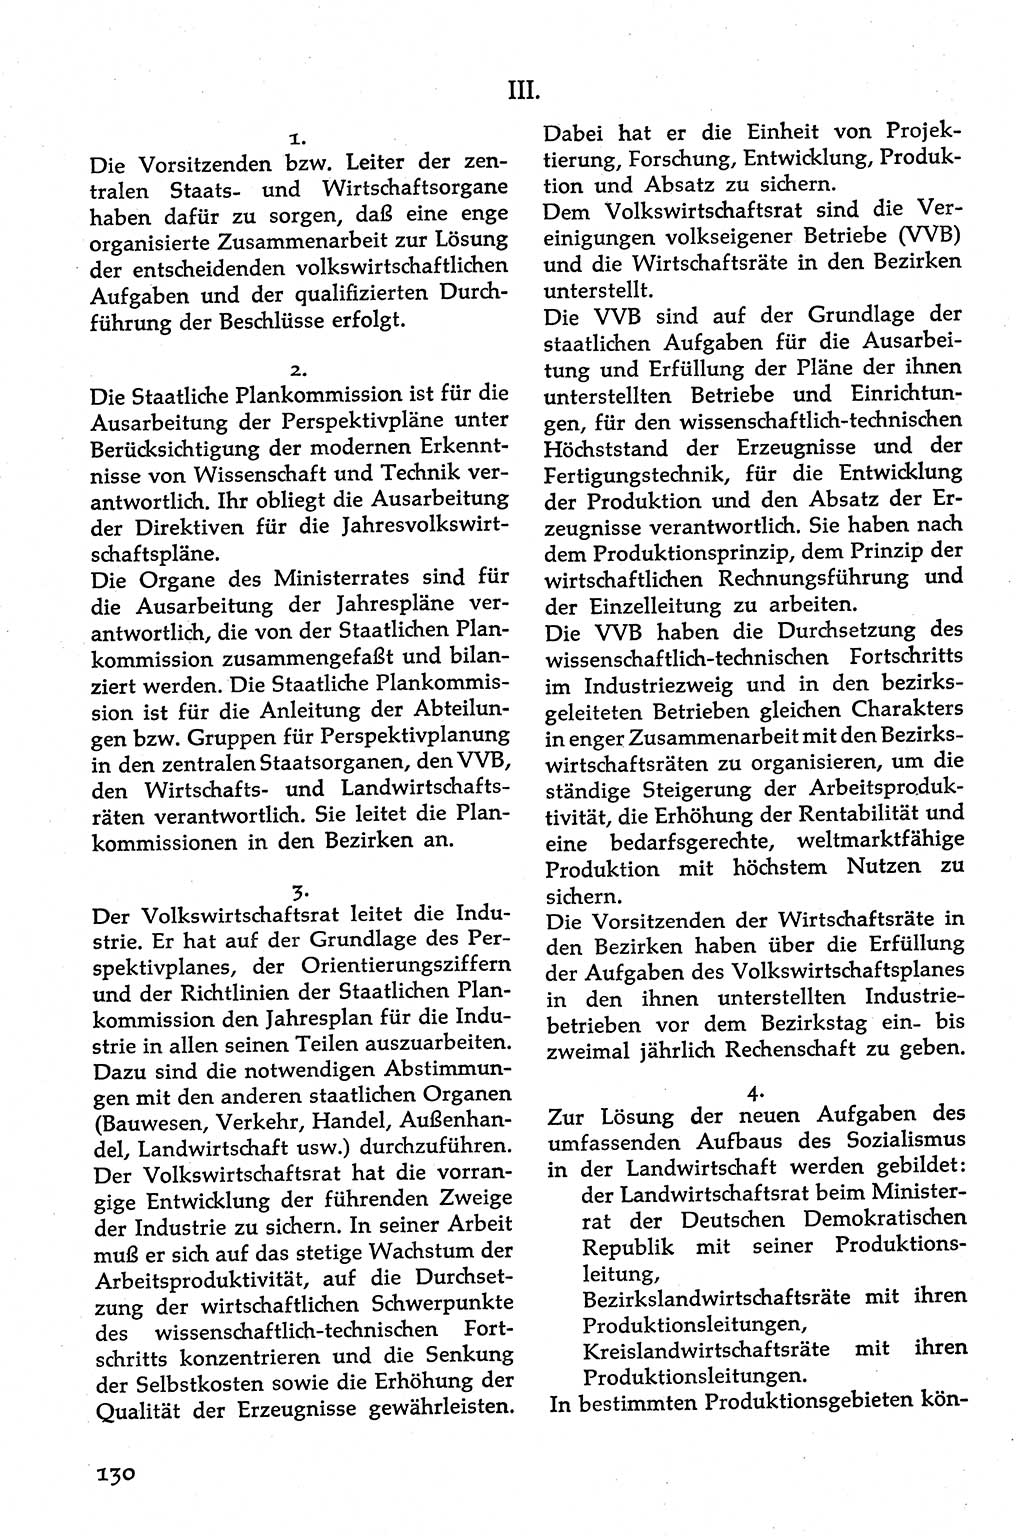 Volksdemokratische Ordnung in Mitteldeutschland [Deutsche Demokratische Republik (DDR)], Texte zur verfassungsrechtlichen Situation 1963, Seite 130 (Volksdem. Ordn. Md. DDR 1963, S. 130)